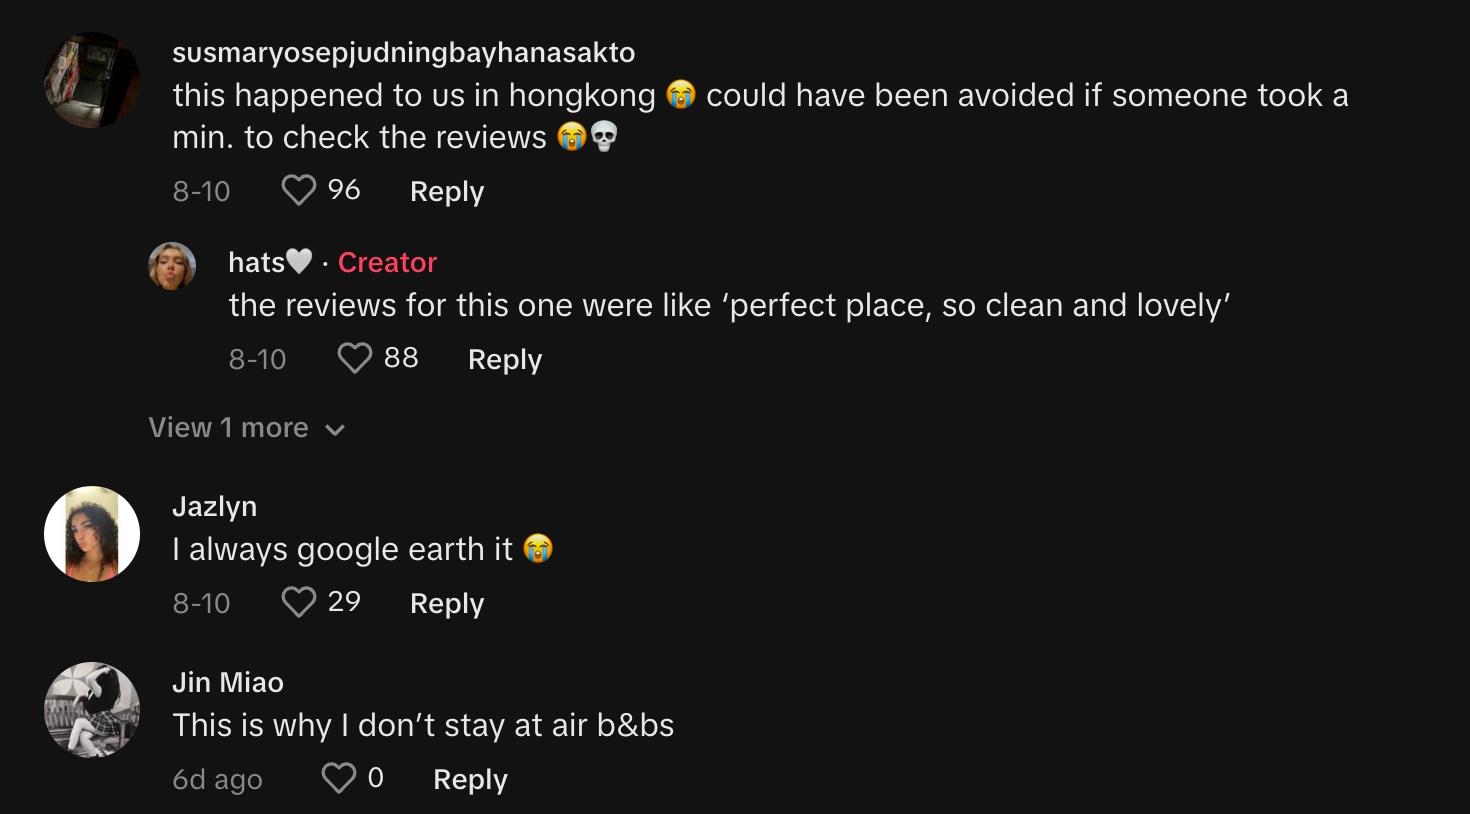 Kommentatoren berichten von ähnlichen Erfahrungen mit Airbnbs